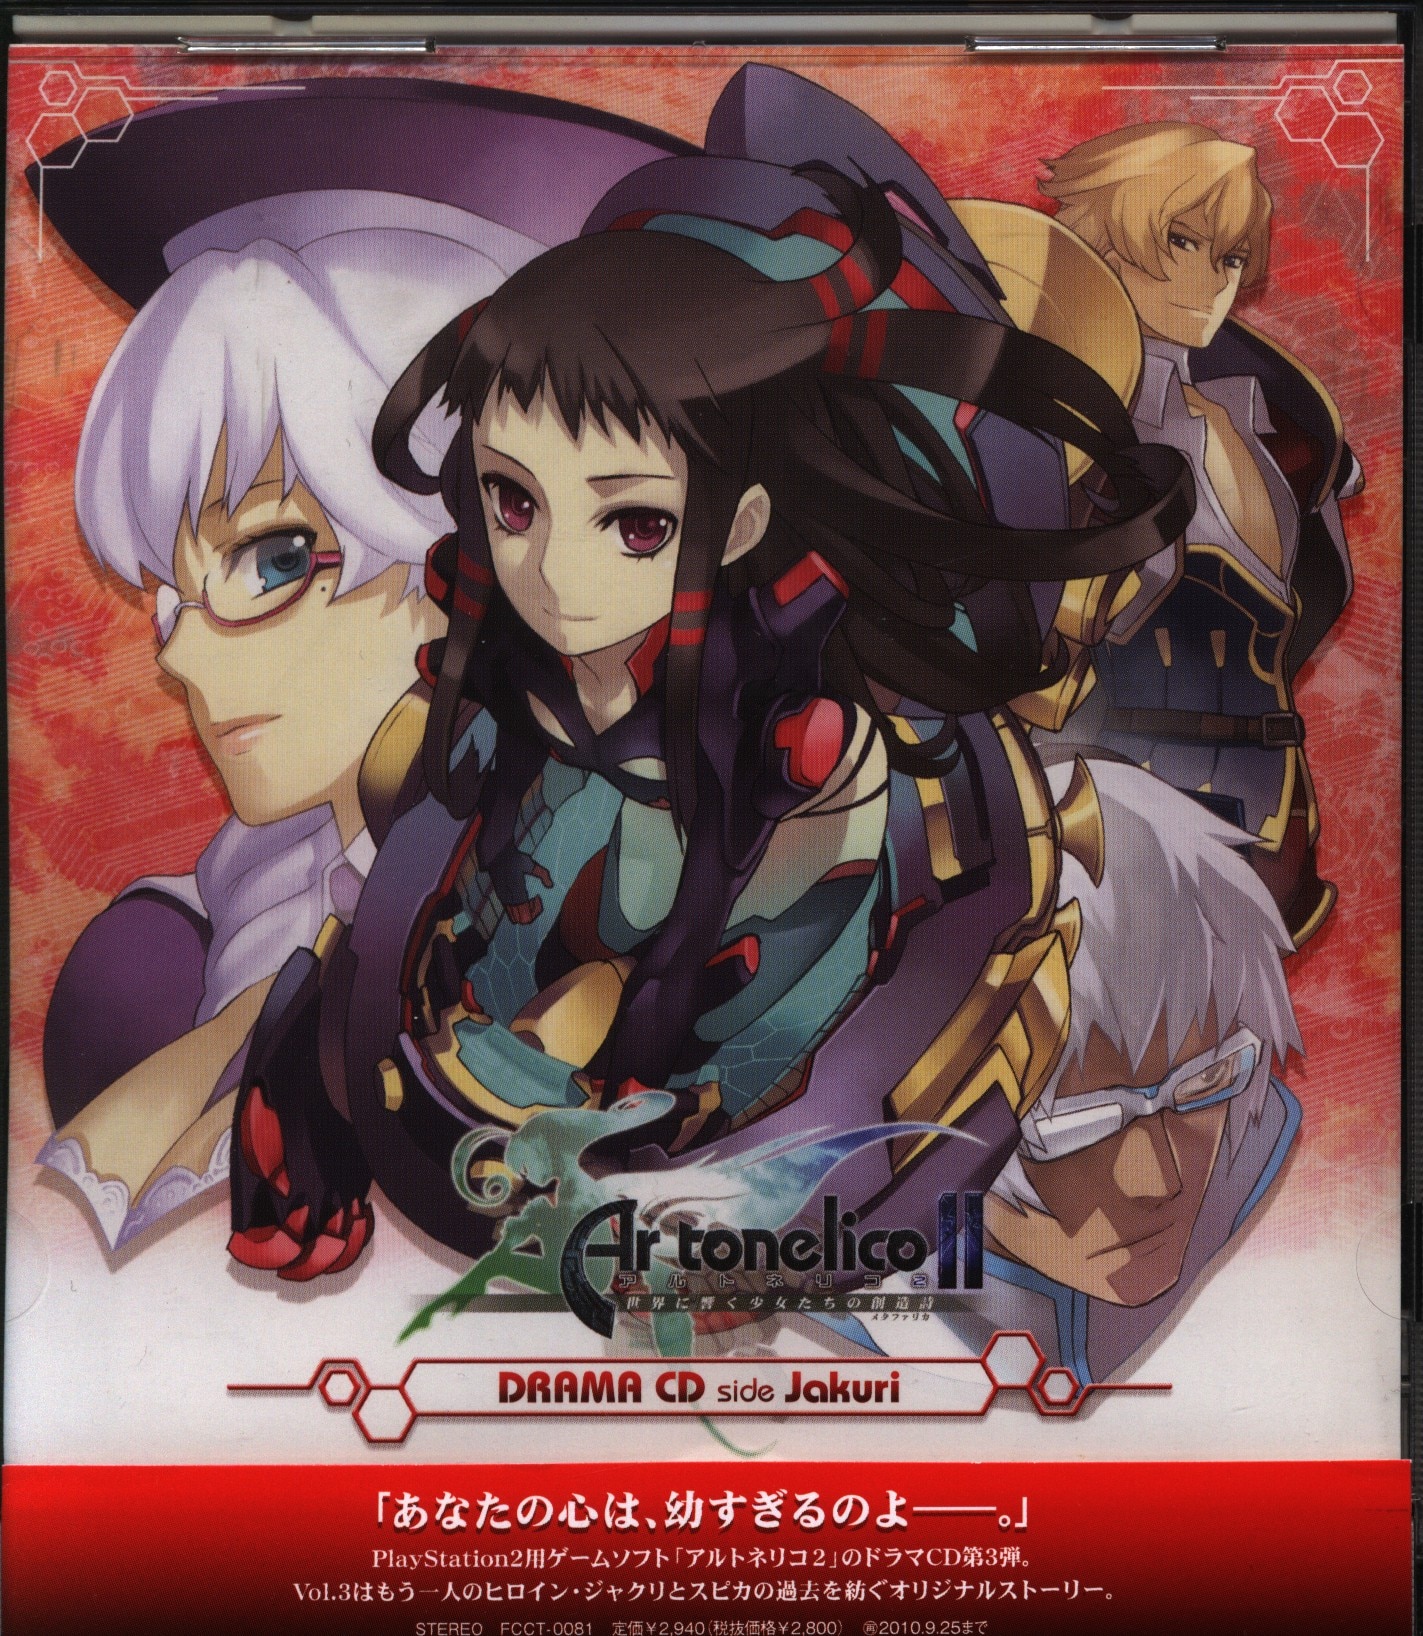 Game CD Ar tonelico 2 Drama CD  side Jakuri | Mandarake Online Shop